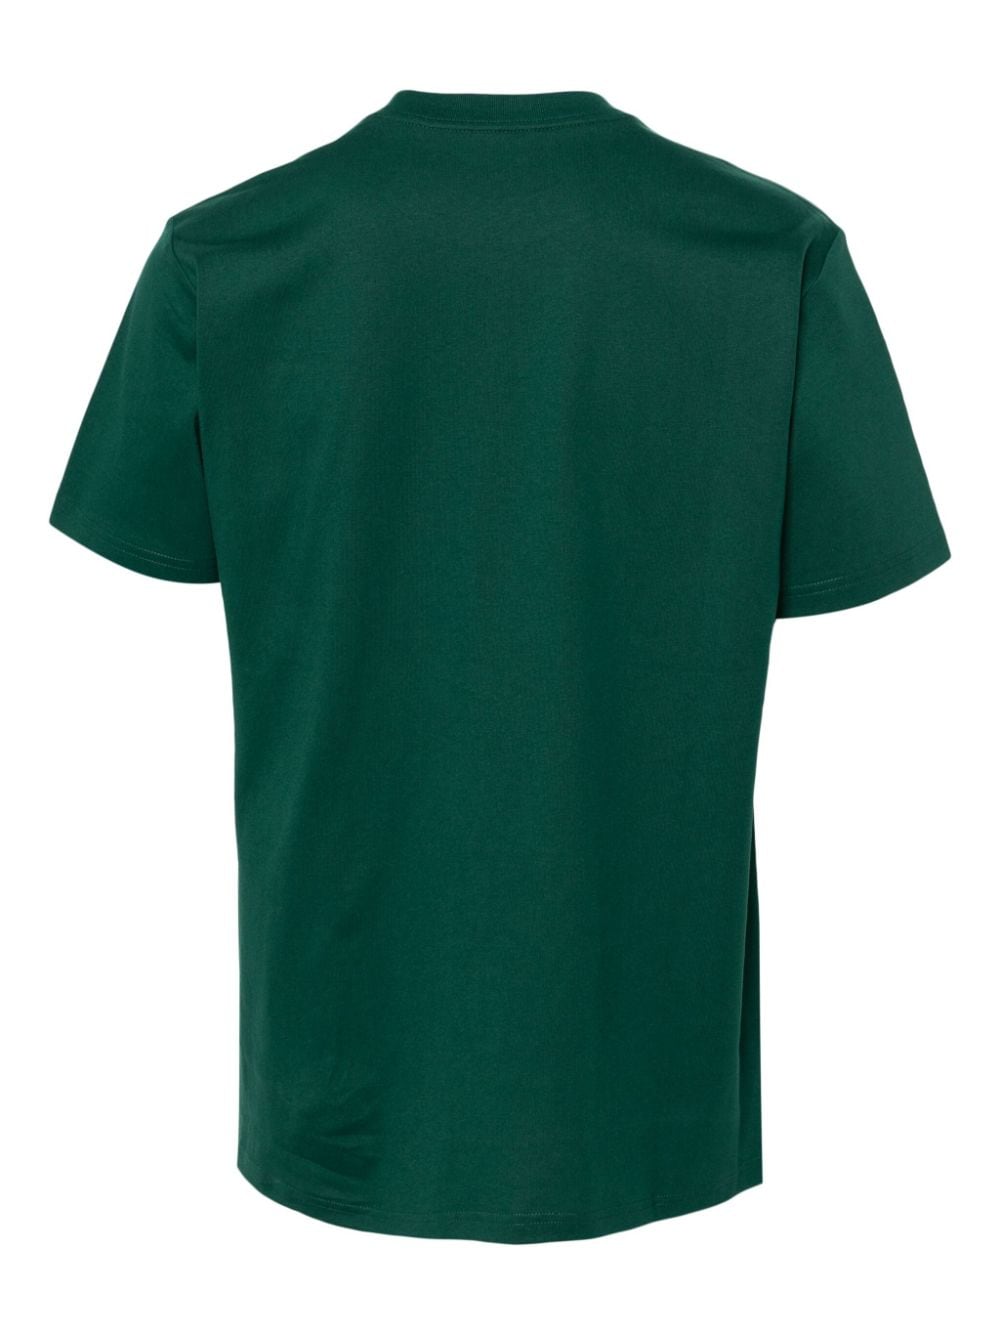 Carhartt WIP University cotton T-shirt - Groen